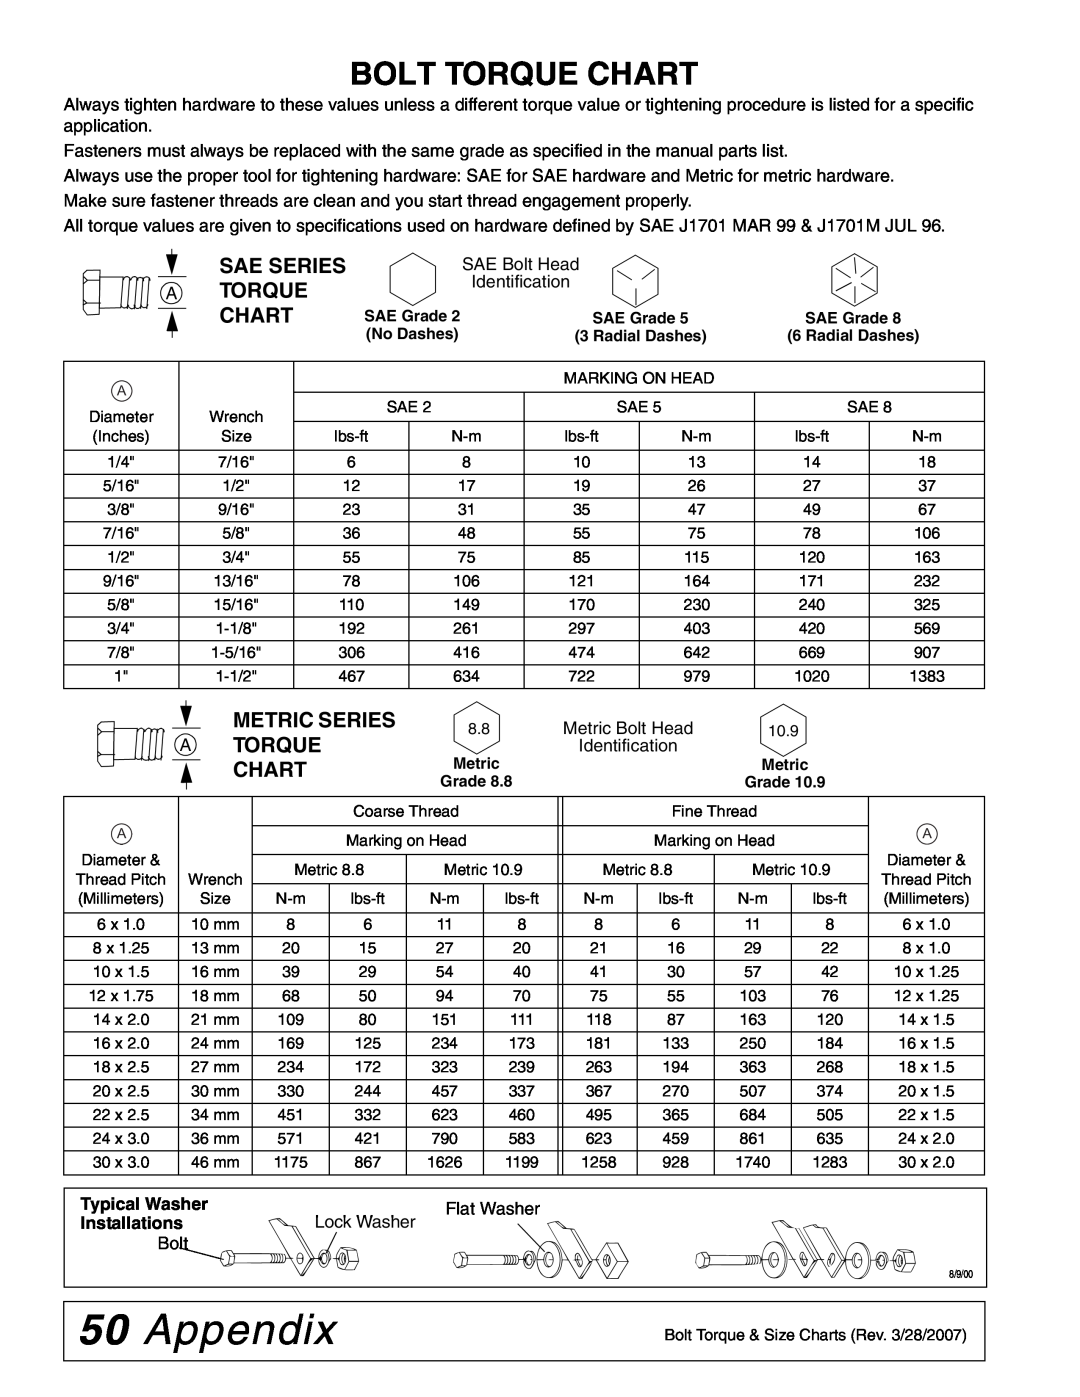 Woods Equipment FZ28K, FZ23B manual 50Appendix, Bolt Torque Chart, Sae Series A Torque Chart, Metric Series Atorque Chart 